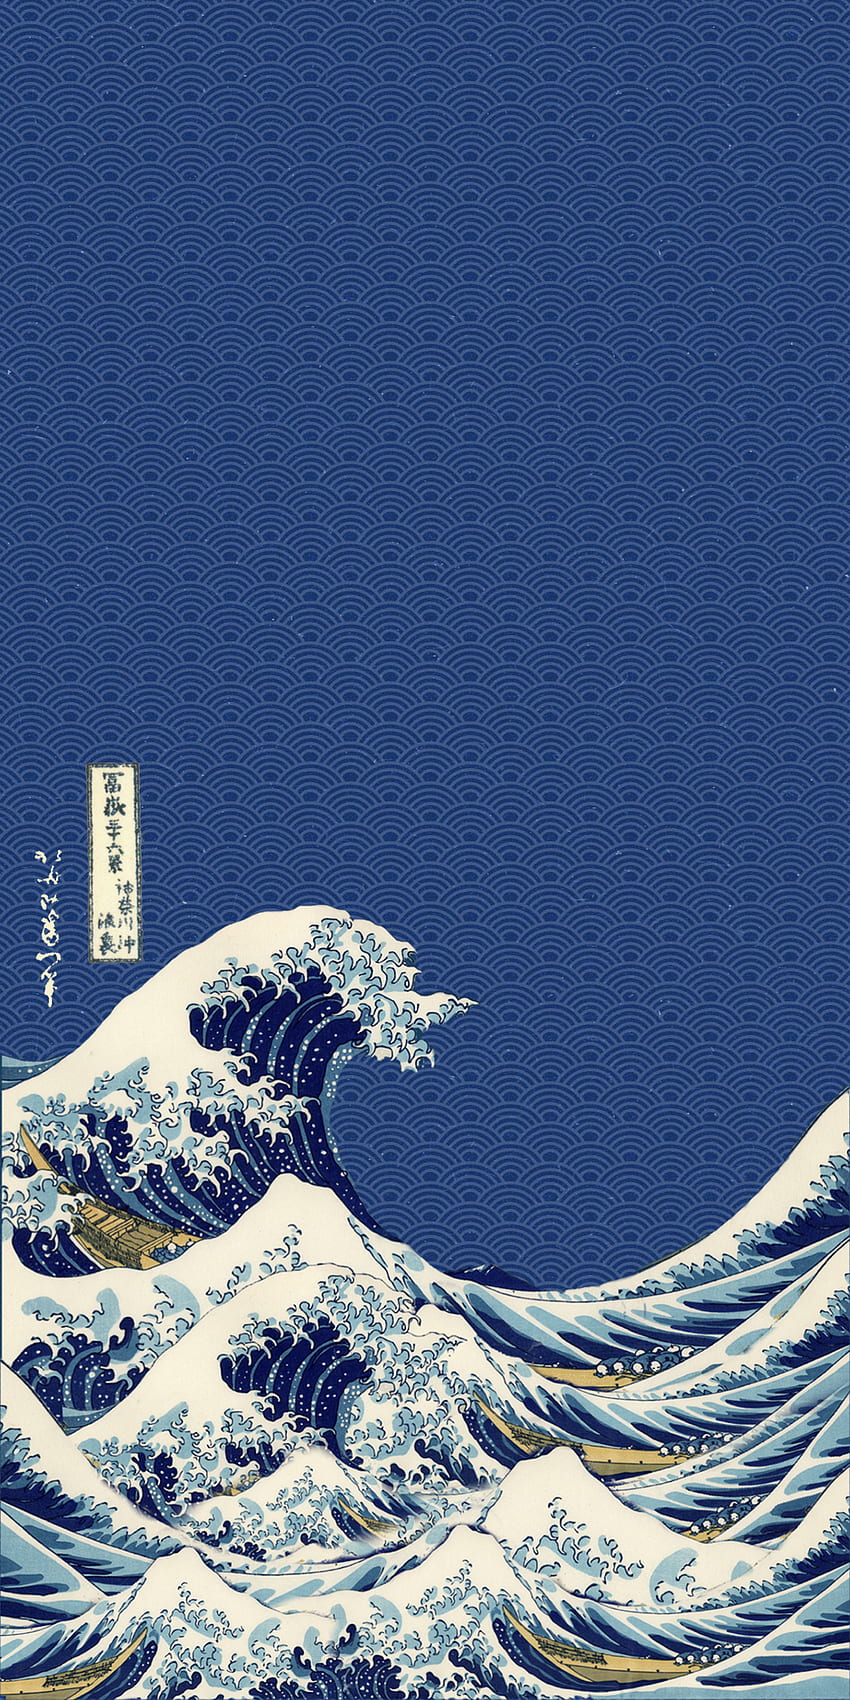 Gran ola de kanagawa, creo que podrían encontrarme uno similar a este. Ondas iphone, iPhone japonés, Vaporwave, Onda japonesa en colores pastel fondo de pantalla del teléfono